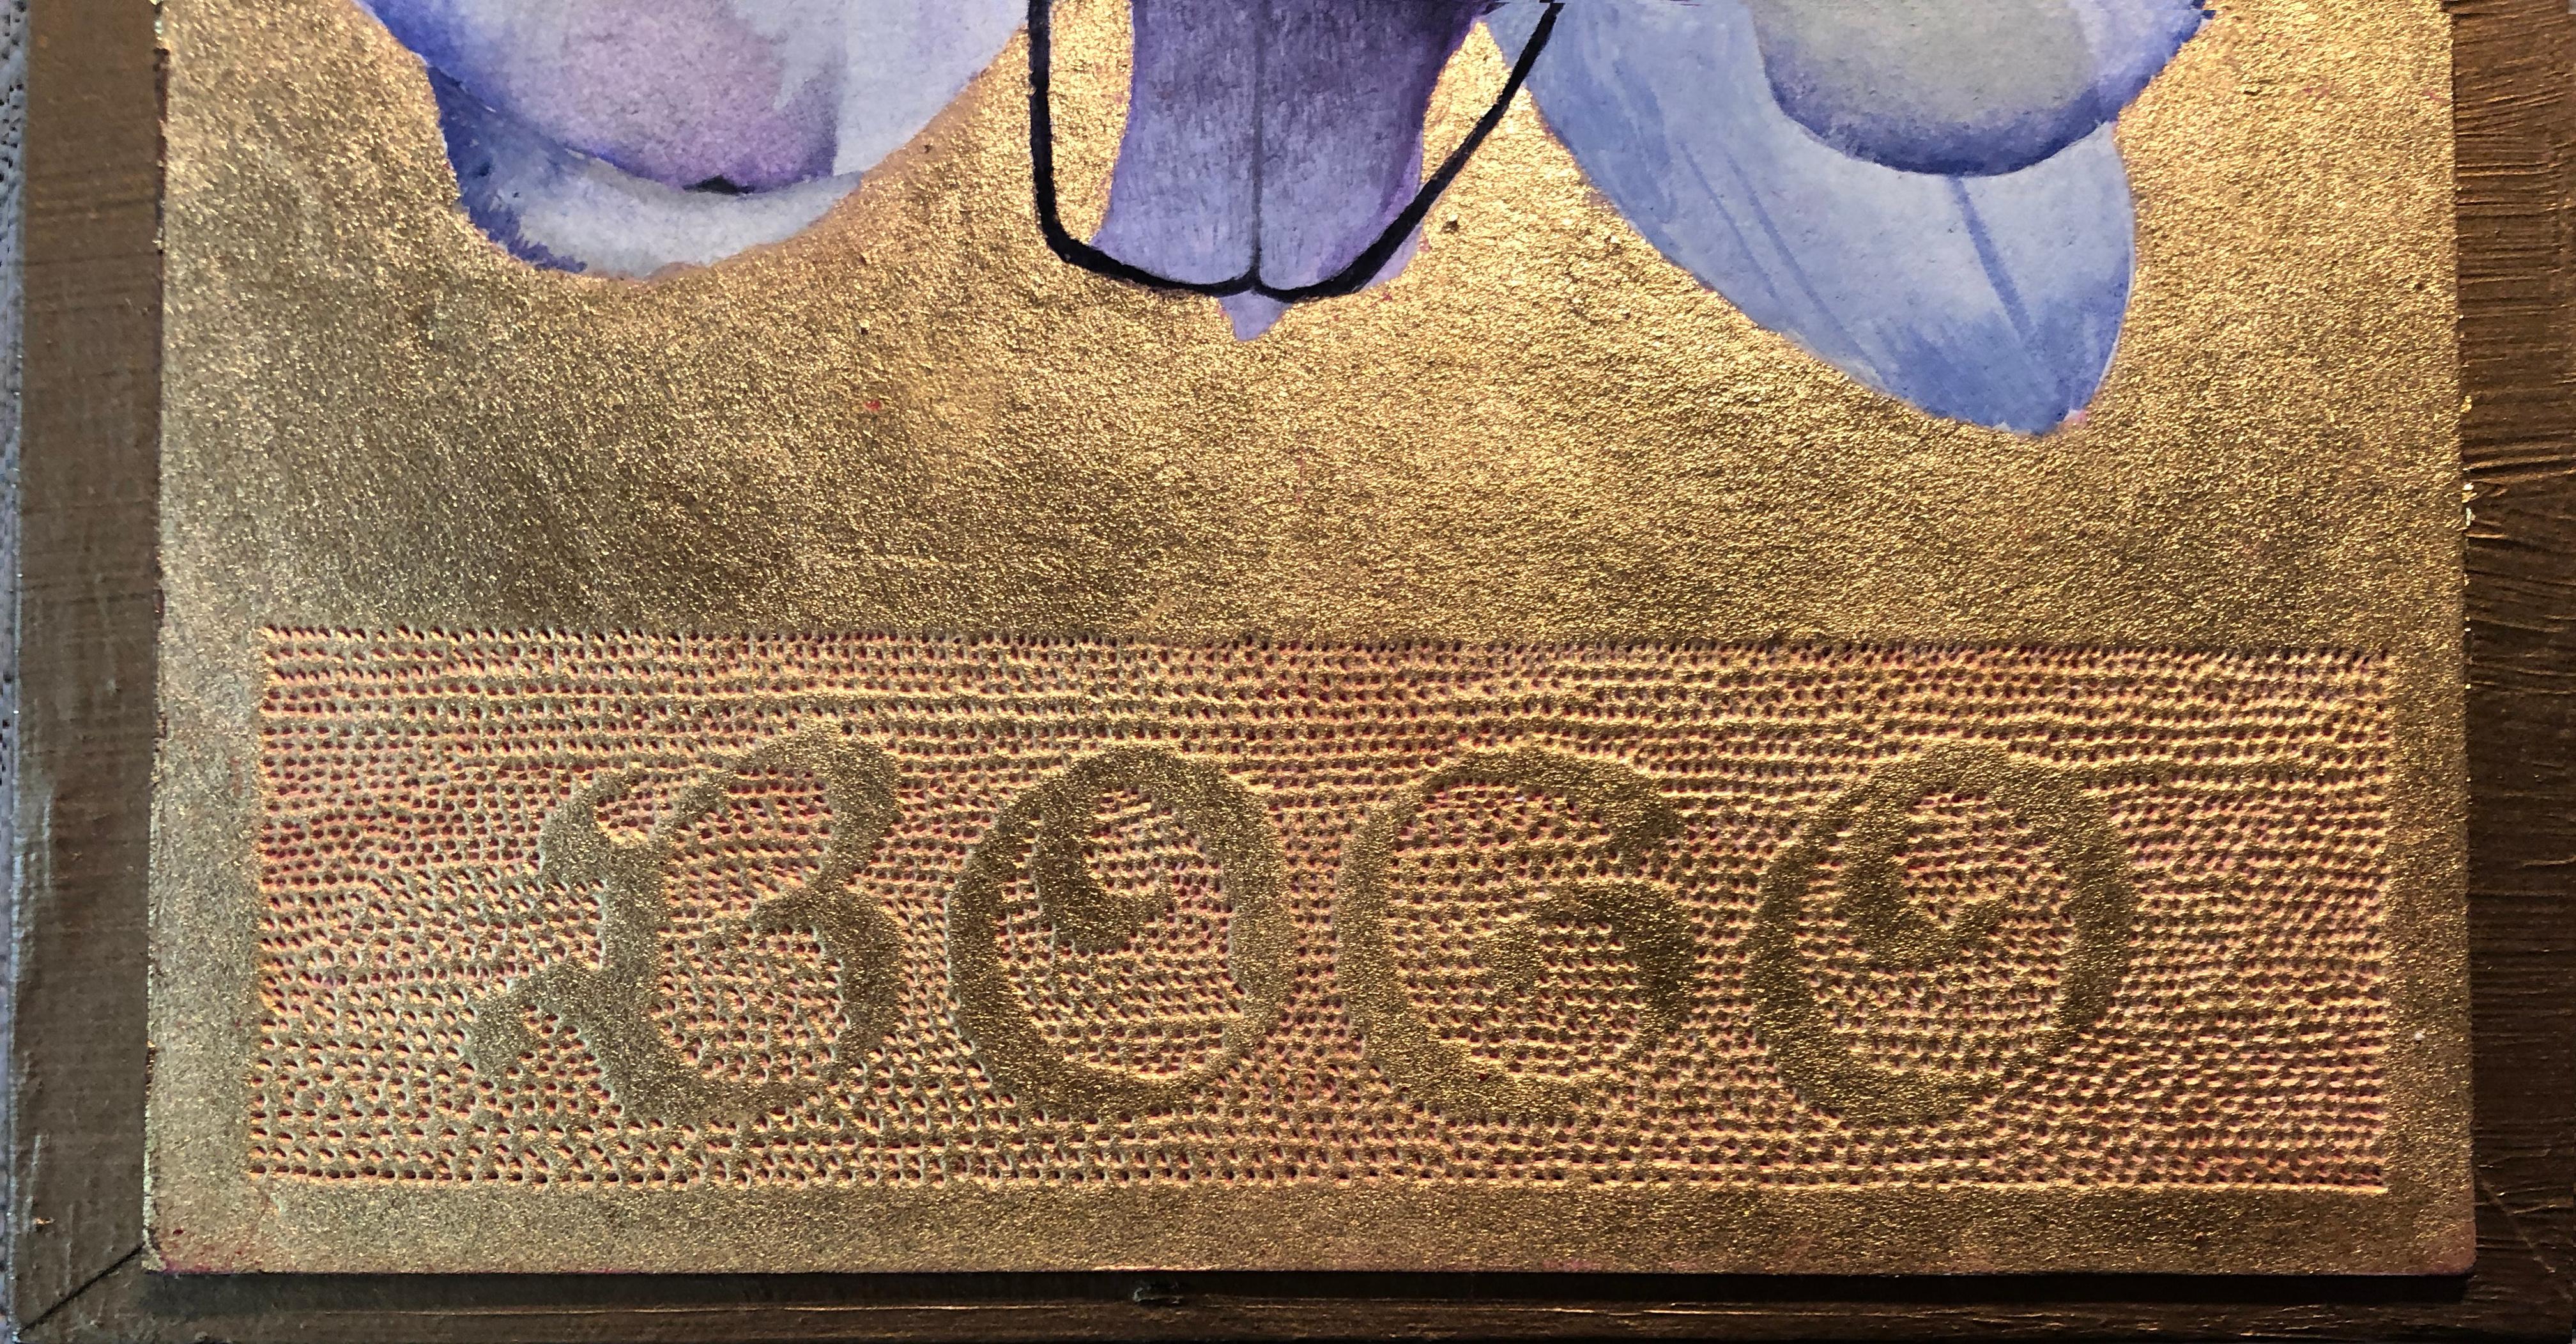 Zeitgenössische Blumen-Wandskulptur in Mischtechnik aus Blattgold und lila Pop-Art-Text (Gold), Figurative Painting, von Rosemary Lyons